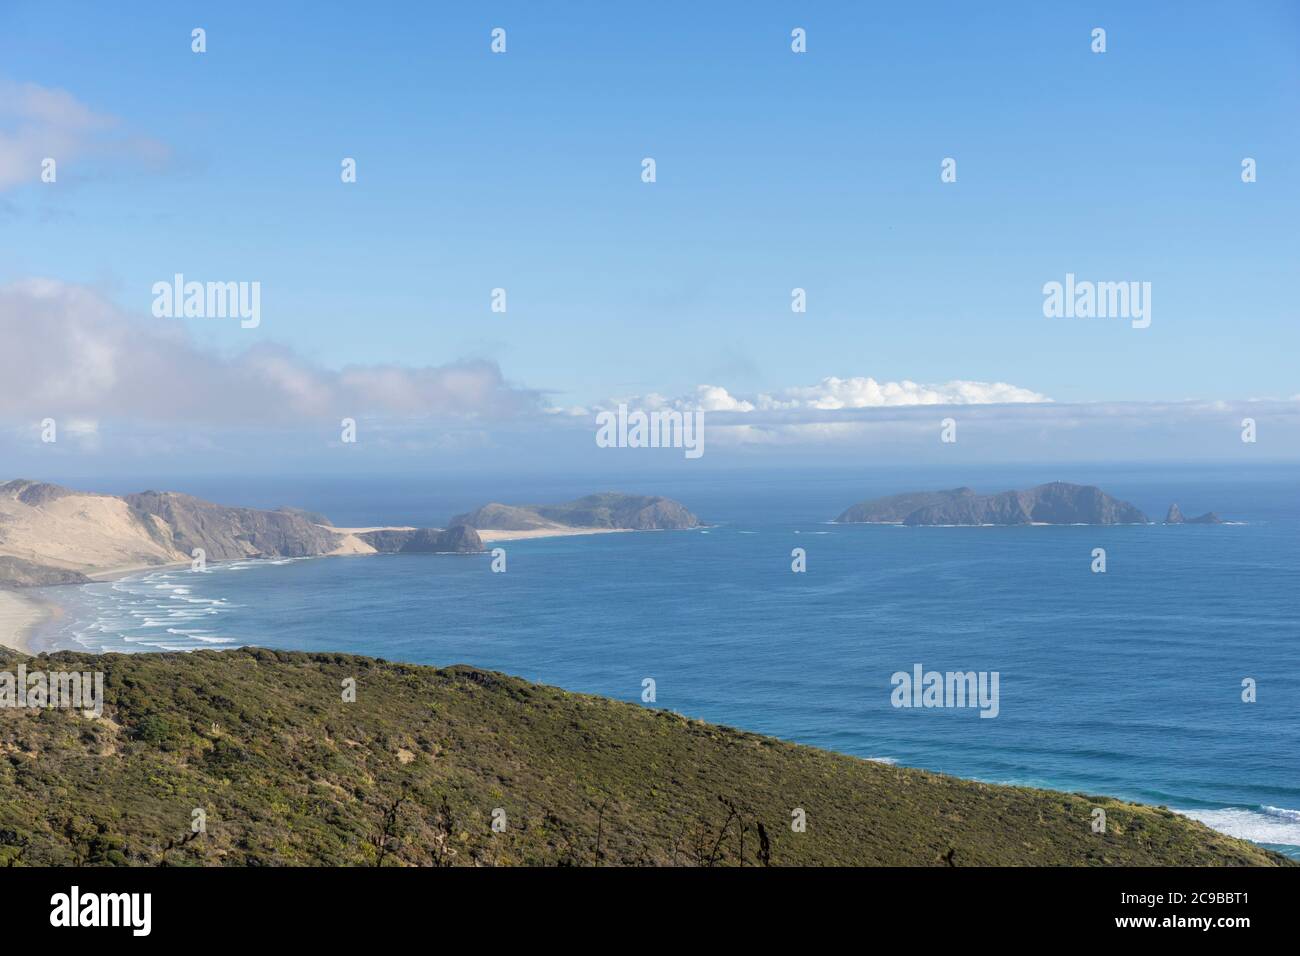 Cape Reinga North New Zealand Reiseziel. Blick auf den See, wo die Tasmanische See auf den Pazifischen Ozean trifft. Stockfoto